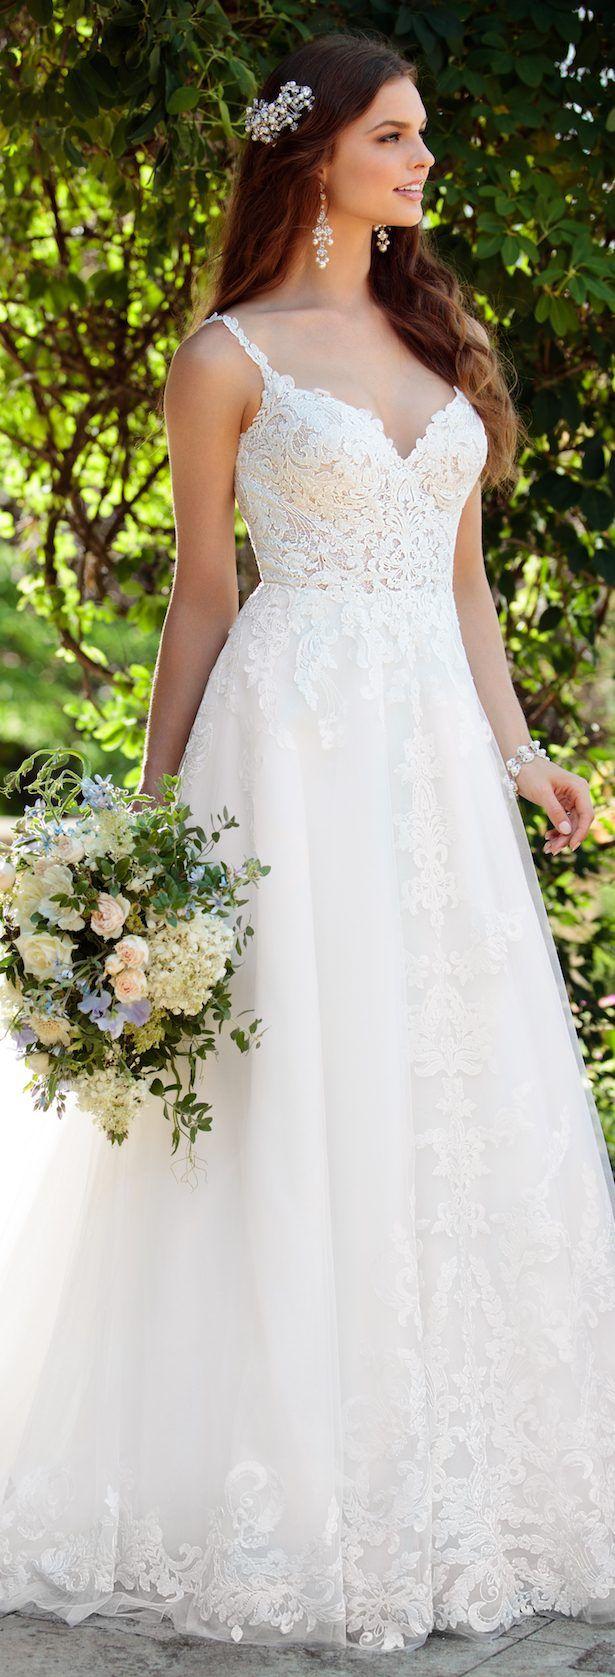 Hochzeit - Wedding Dress By Essense Of Australia Spring 2017 Bridal Collection